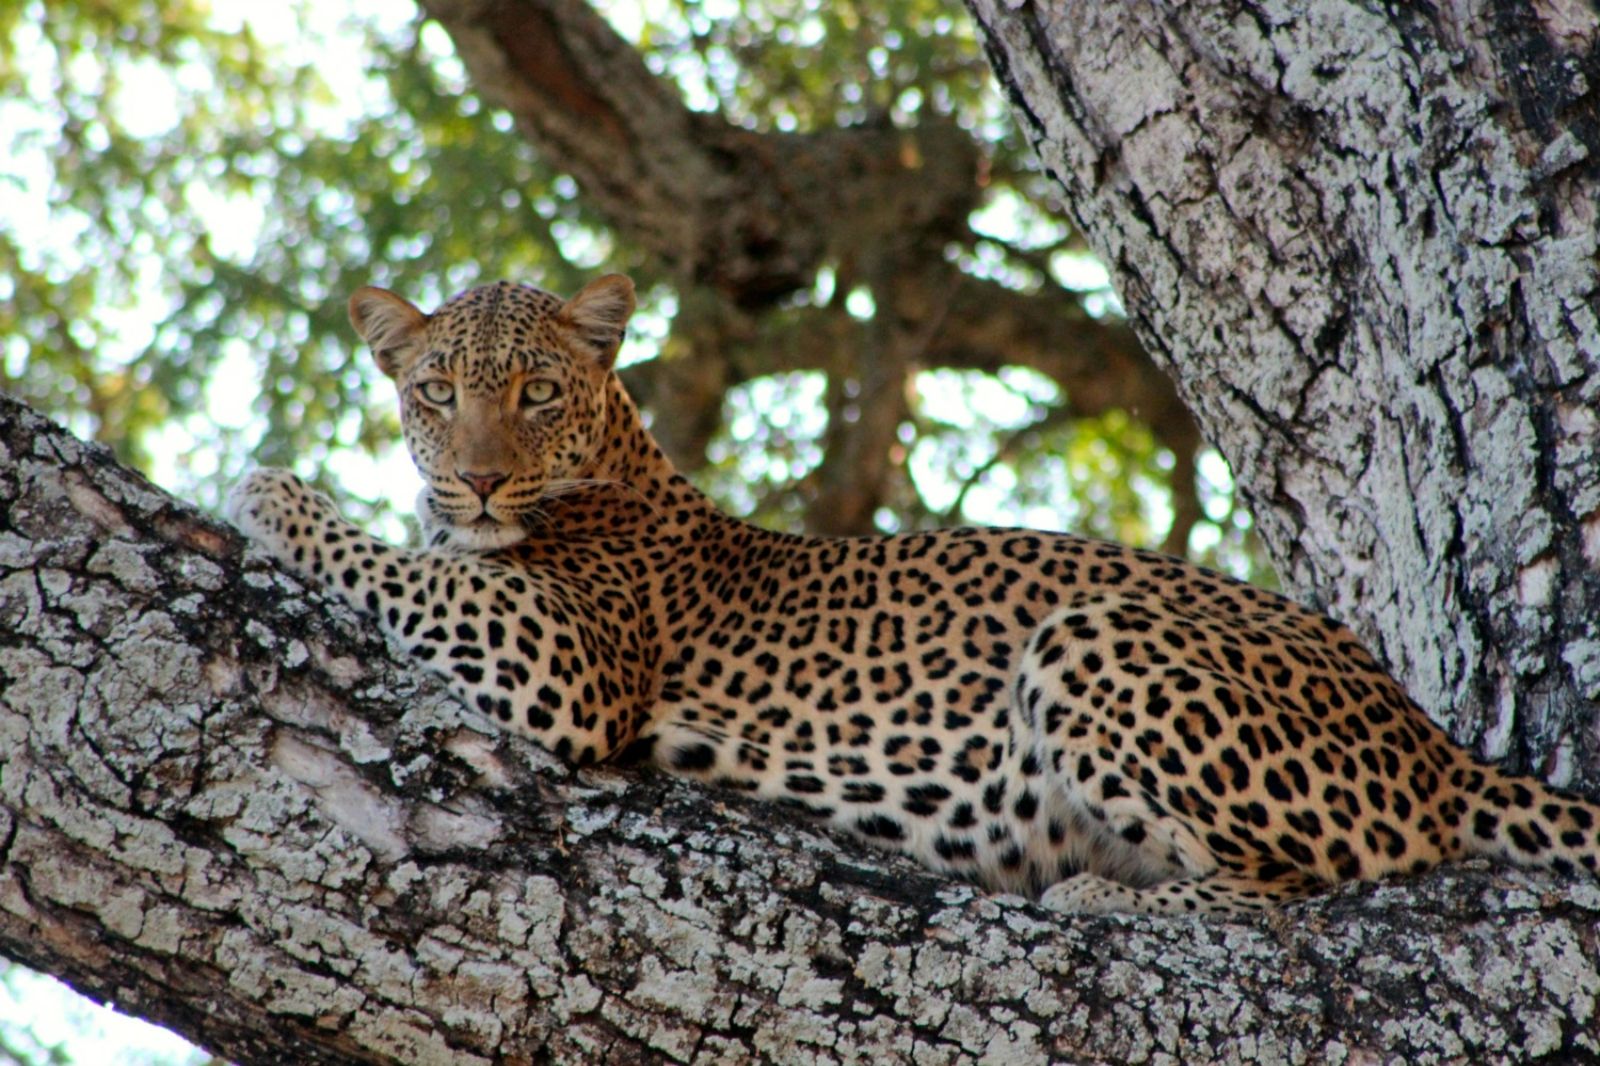 Leopard seen on the grounds at Anabezi camp in the Lower Zambezi, Zambia